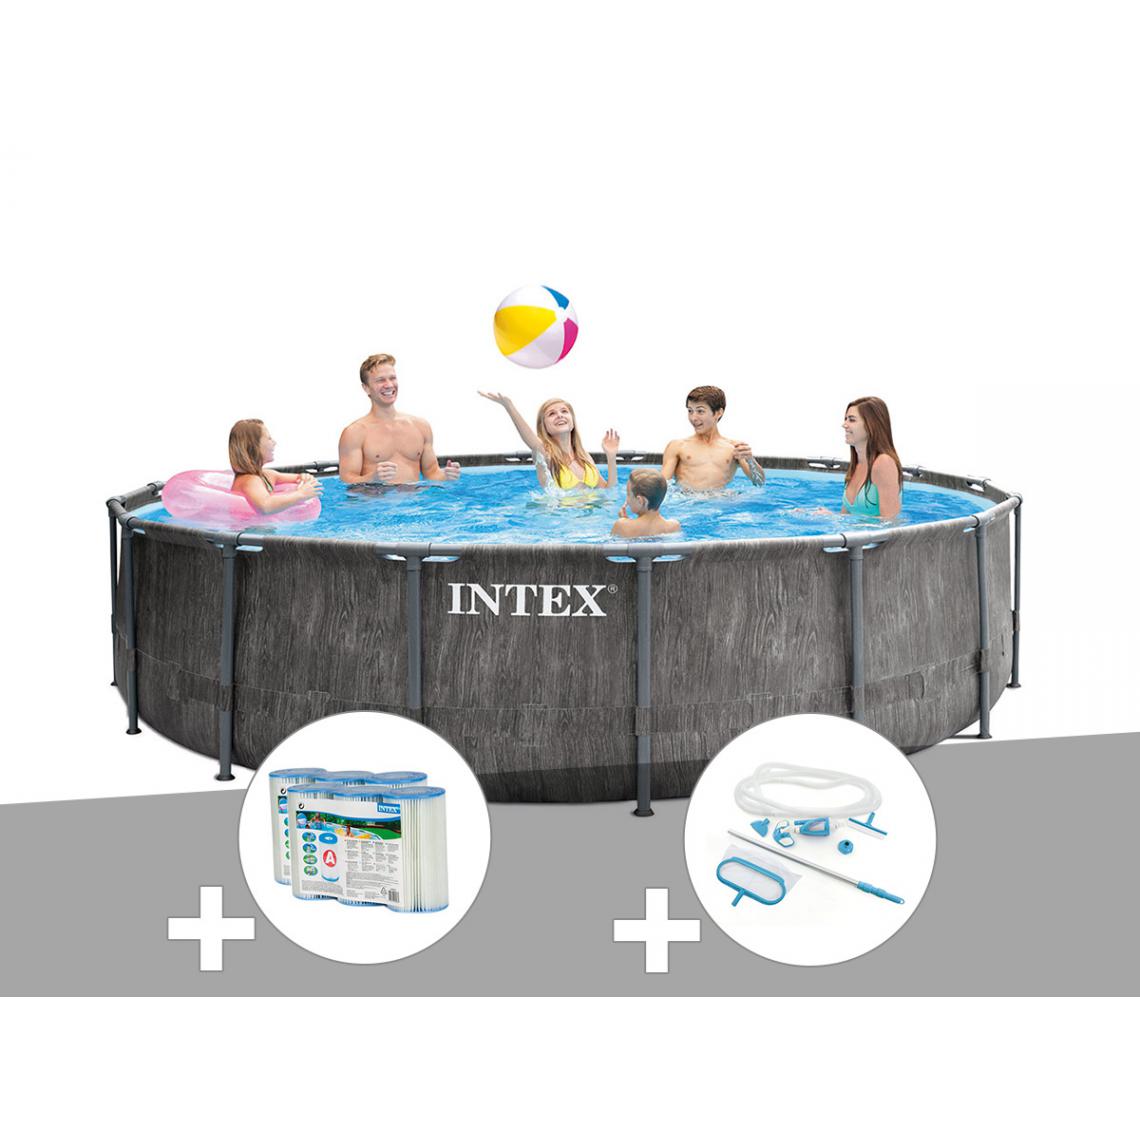 Intex - Kit piscine tubulaire Intex Baltik ronde 4,57 x 1,22 m + 6 cartouches de filtration + Kit d'entretien - Piscine Tubulaire